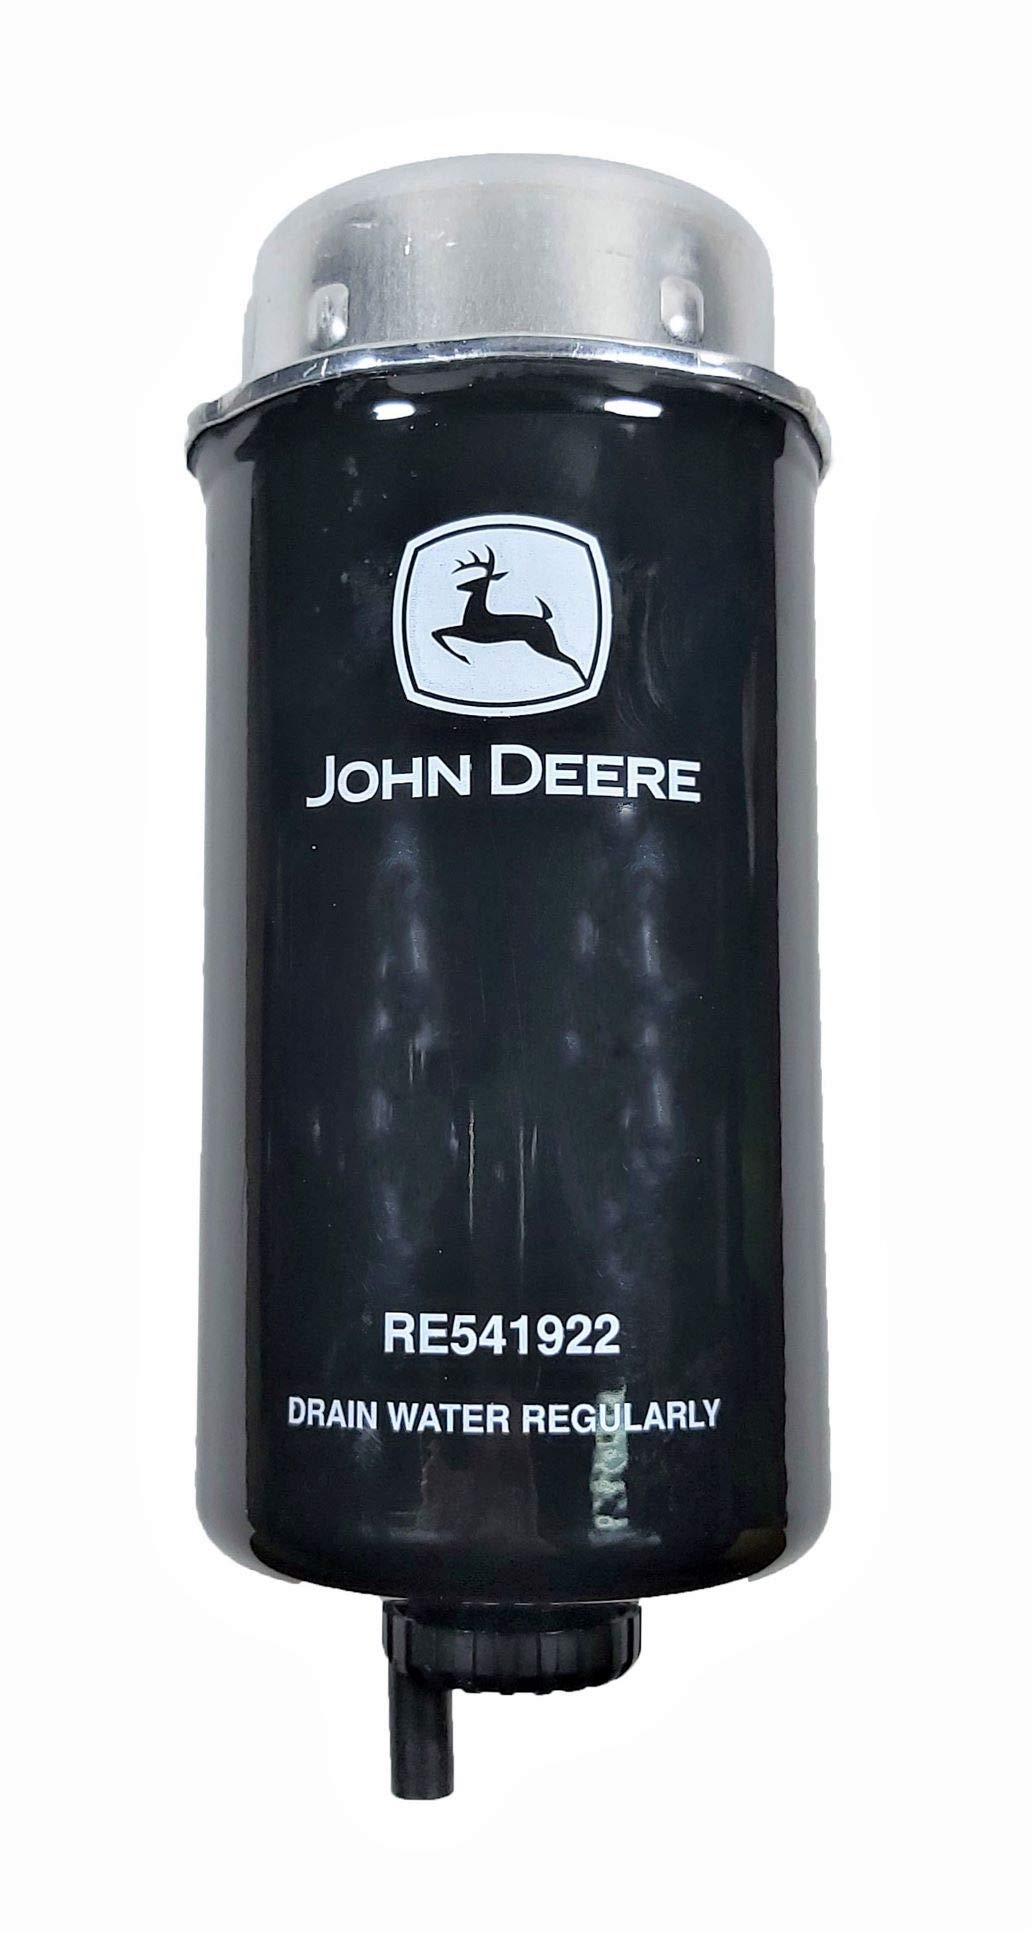 JOHN DEERE RE541922 (ANTIGUO RE529643) Dieselfilter, Original-Ersatzteil. von JOHN DEERE